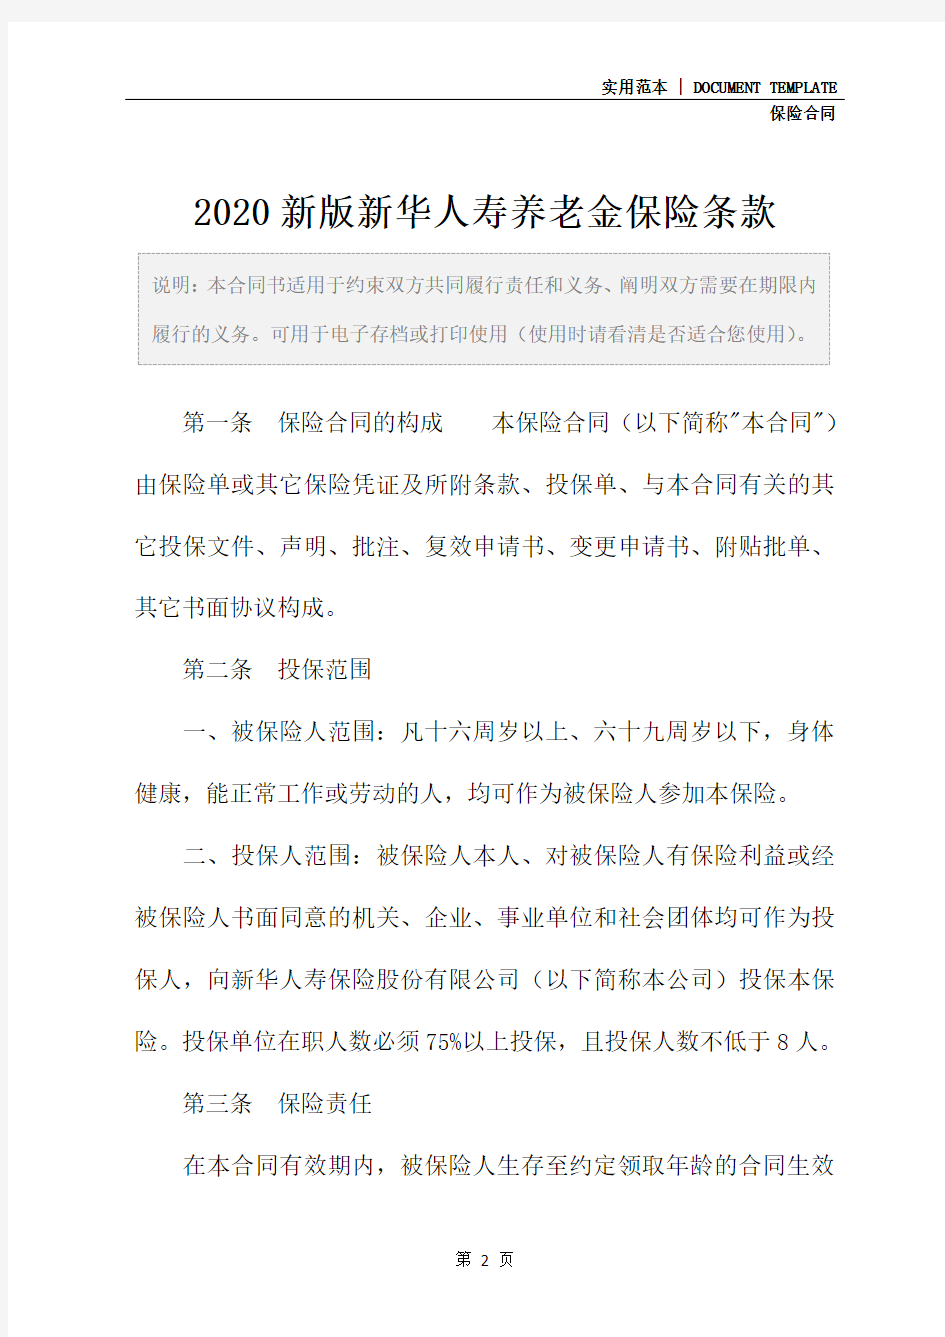 2020新版新华人寿养老金保险条款